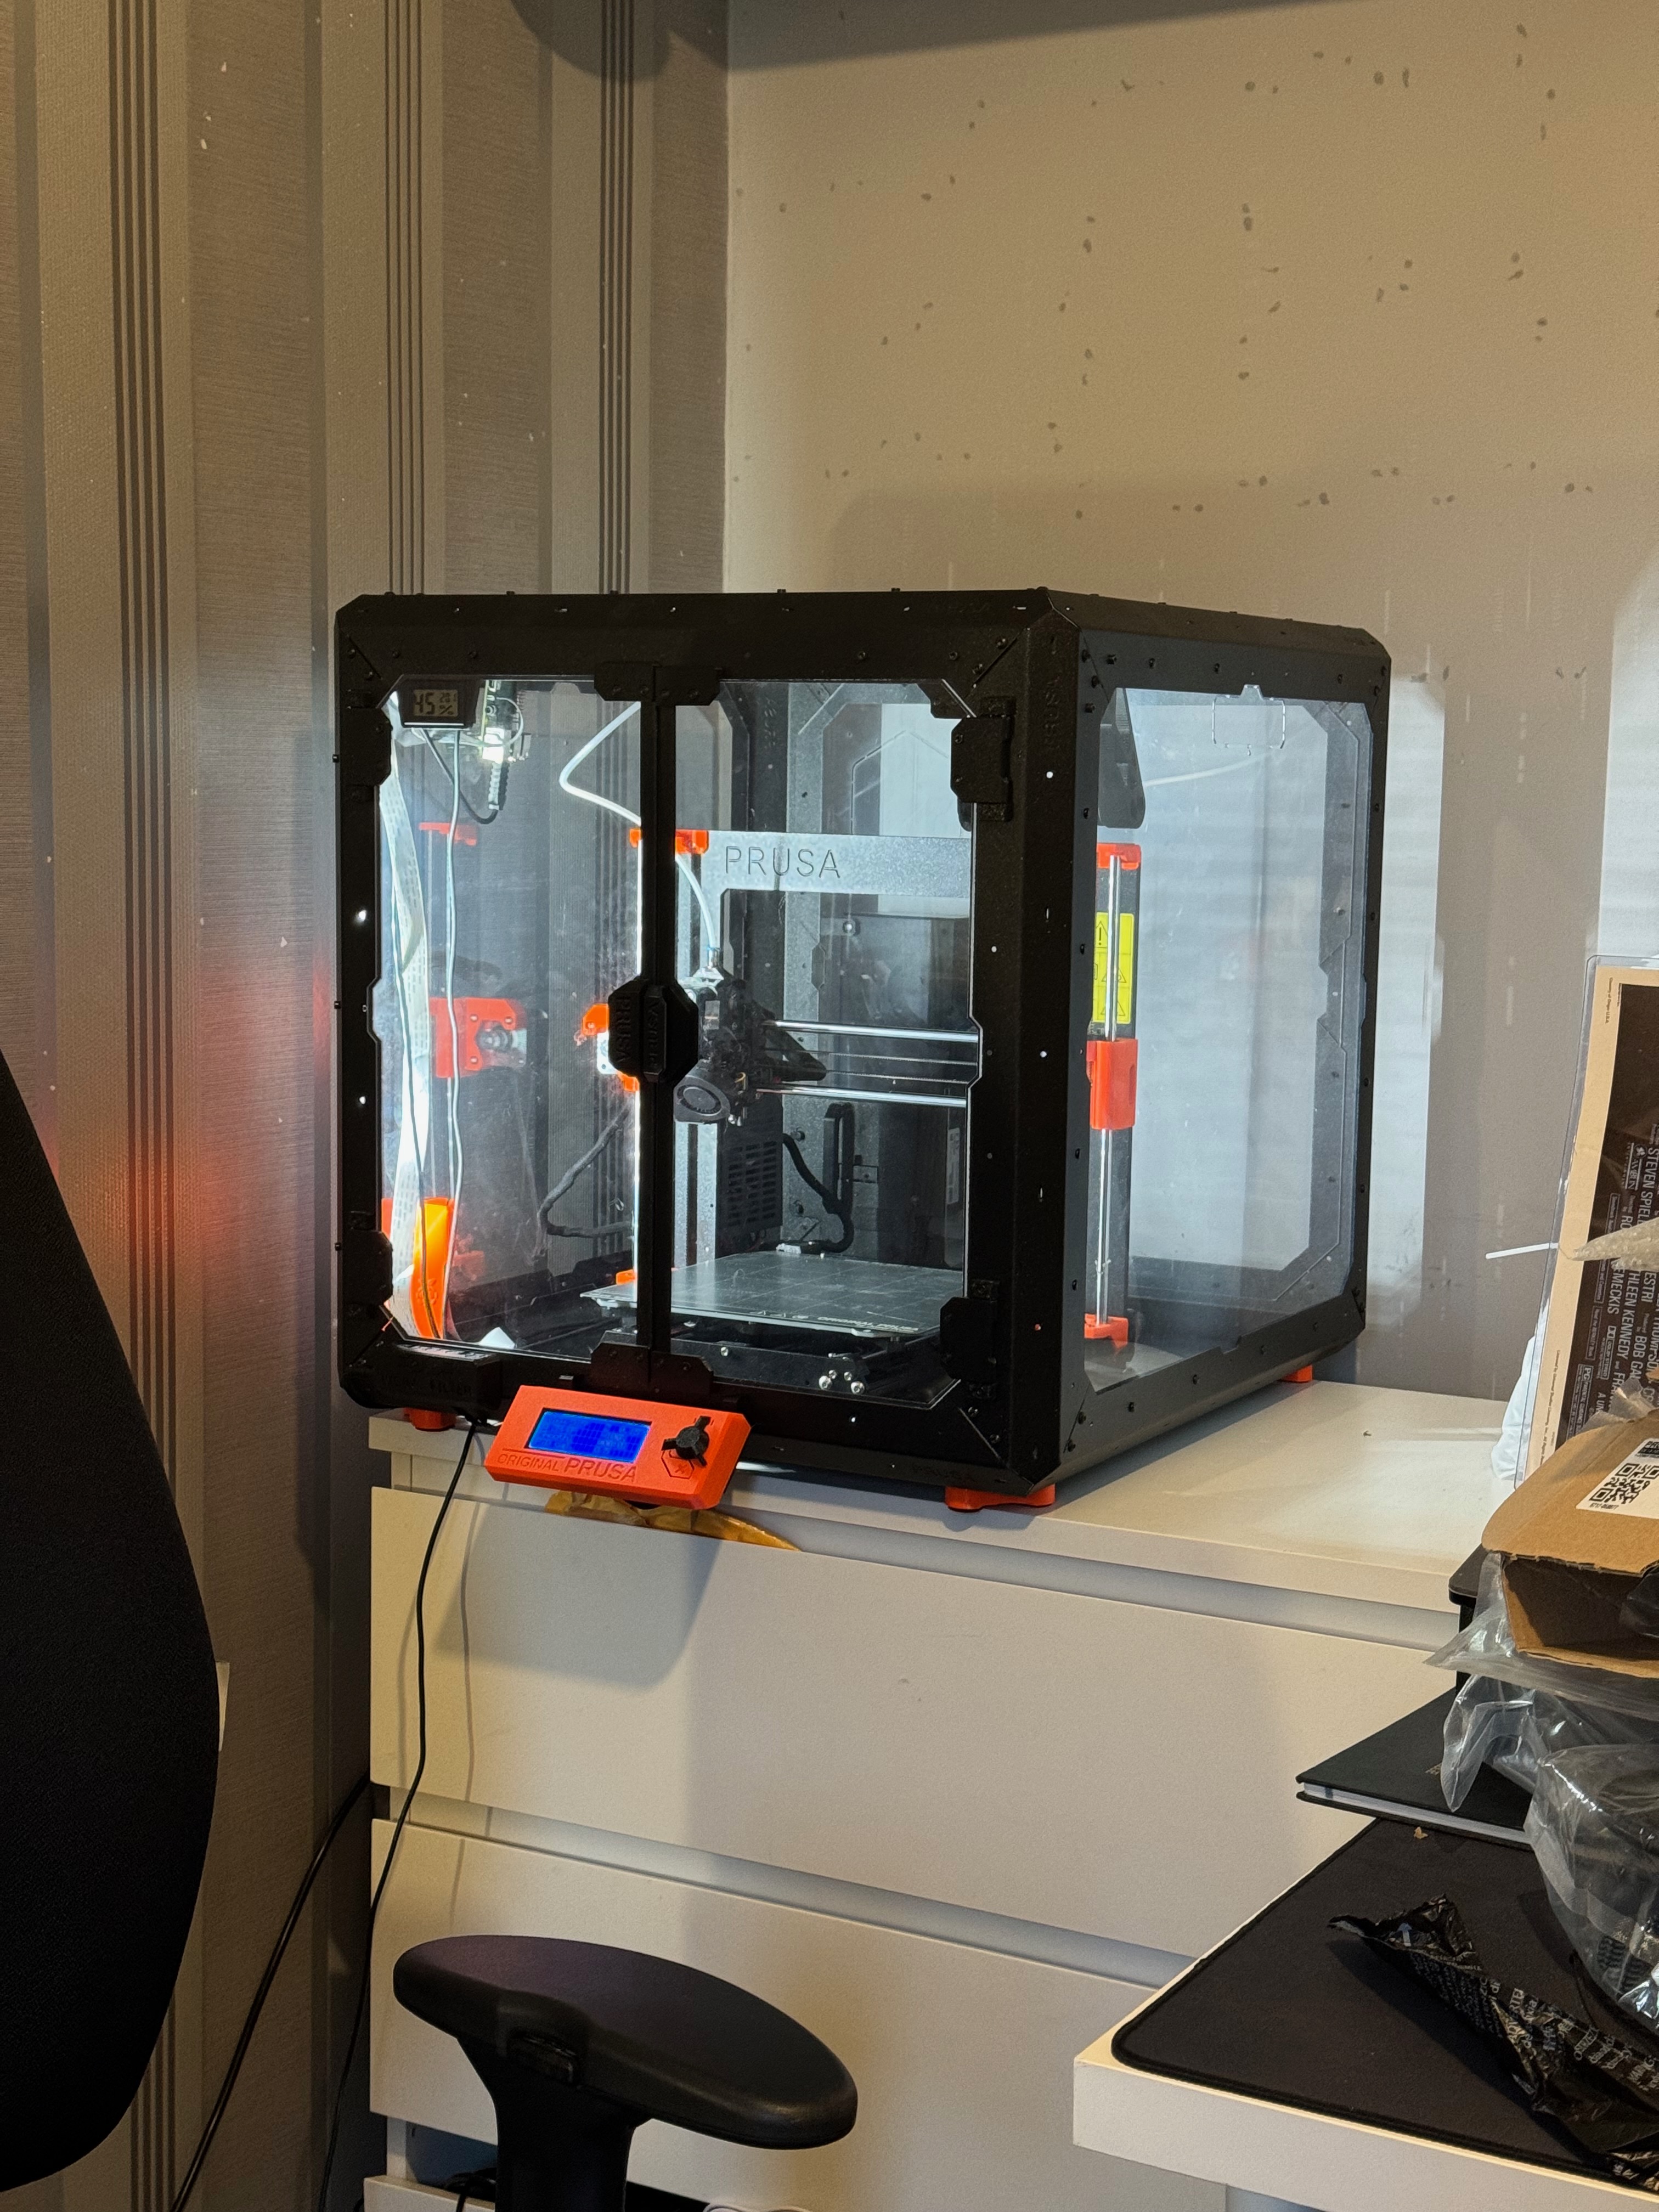 3D Printer back in the corner